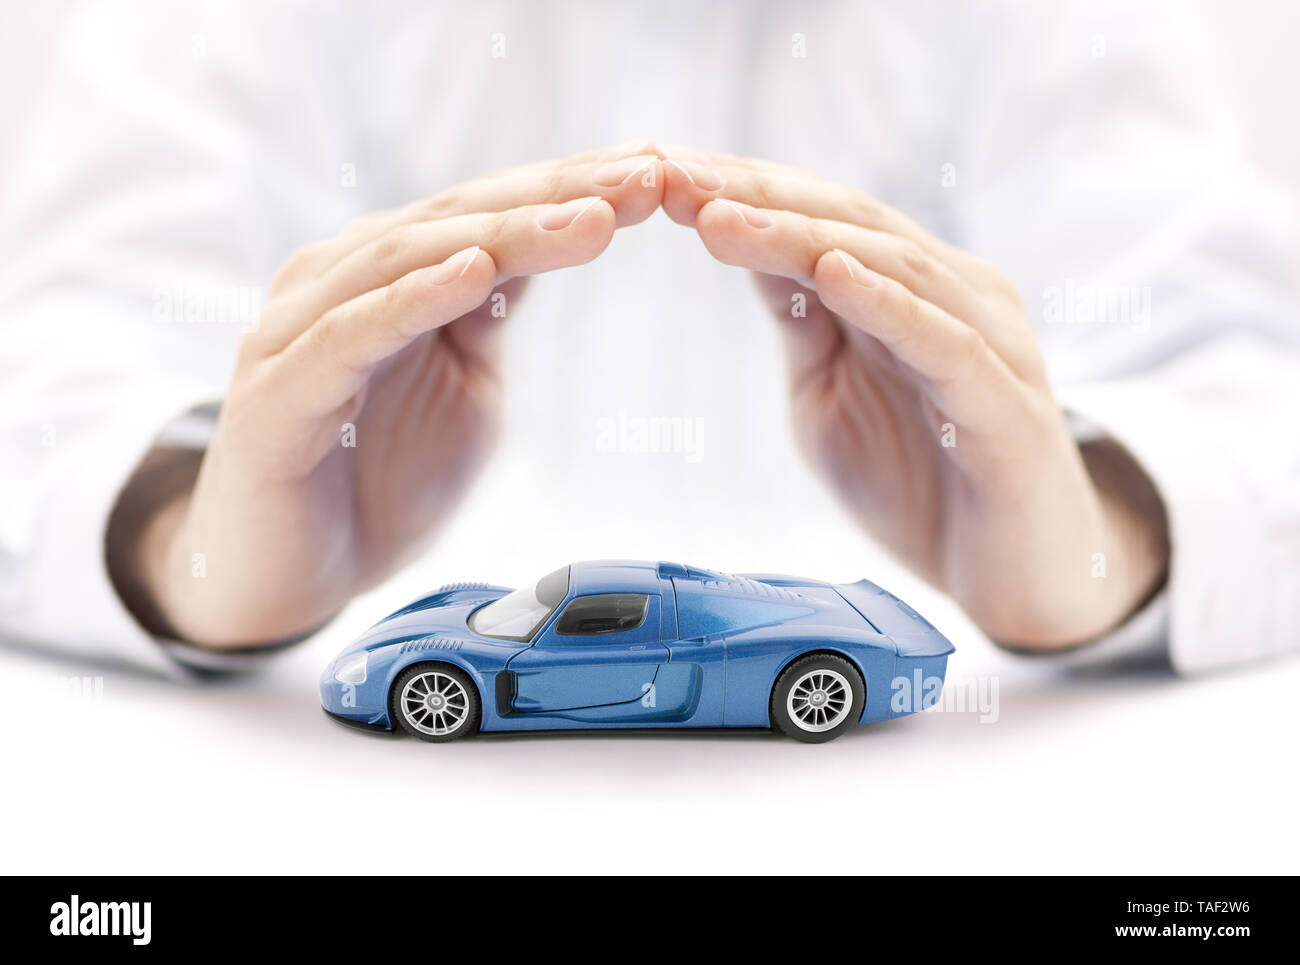 Assurance voiture concept avec voiture bleue toy couverts par les mains Banque D'Images